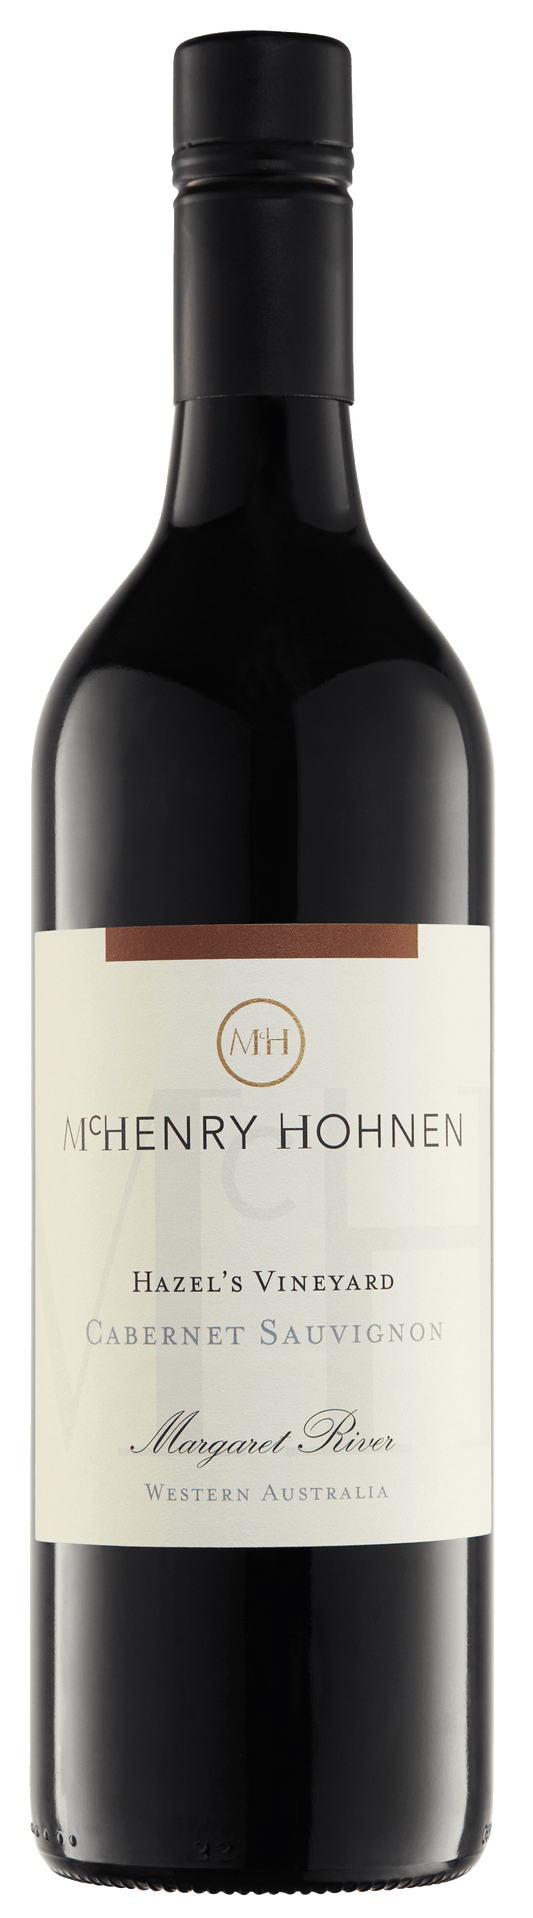 McHenry Hohnen Hazel's Vineyard Cabernet Sauvignon 2016